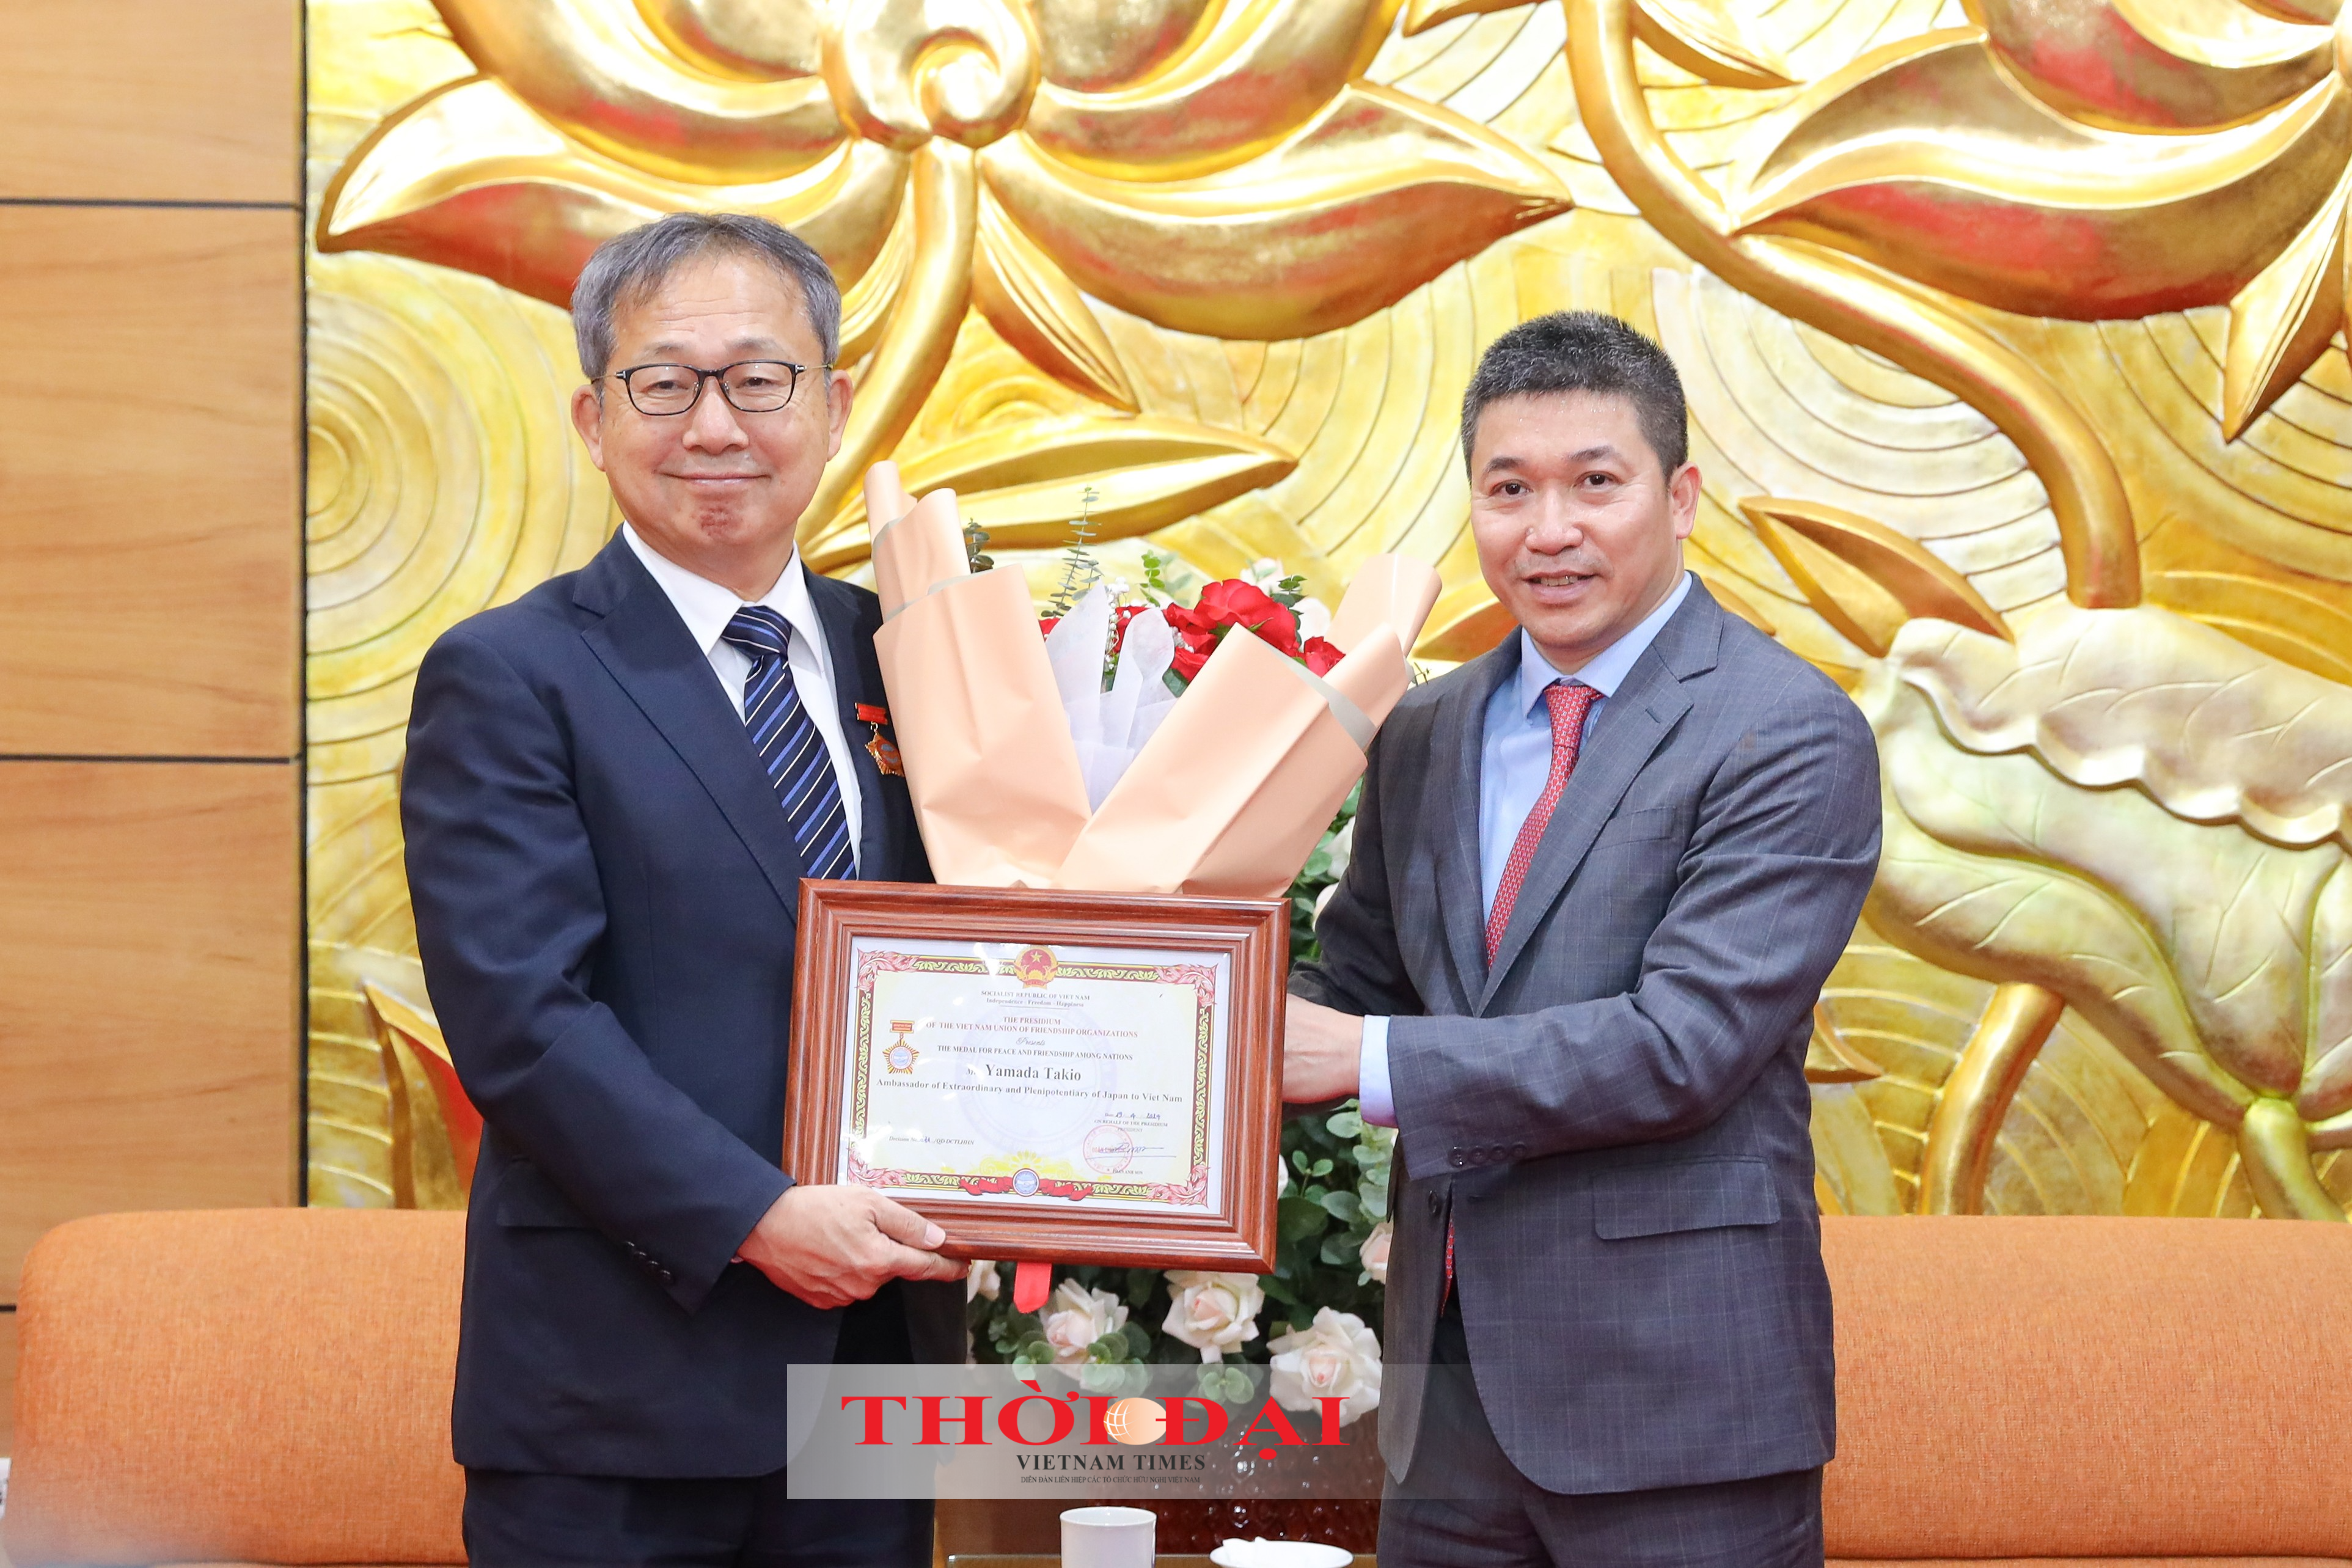 Ông Phan Anh Sơn (bên phải), Chủ tịch Liên hiệp các tổ chức hữu nghị Việt Nam trao tặng Kỷ niệm chương “Vì hòa bình, hữu nghị giữa các dân tộc” cho Đại sứ Yamada Takio. (Ảnh: Đinh Hòa)